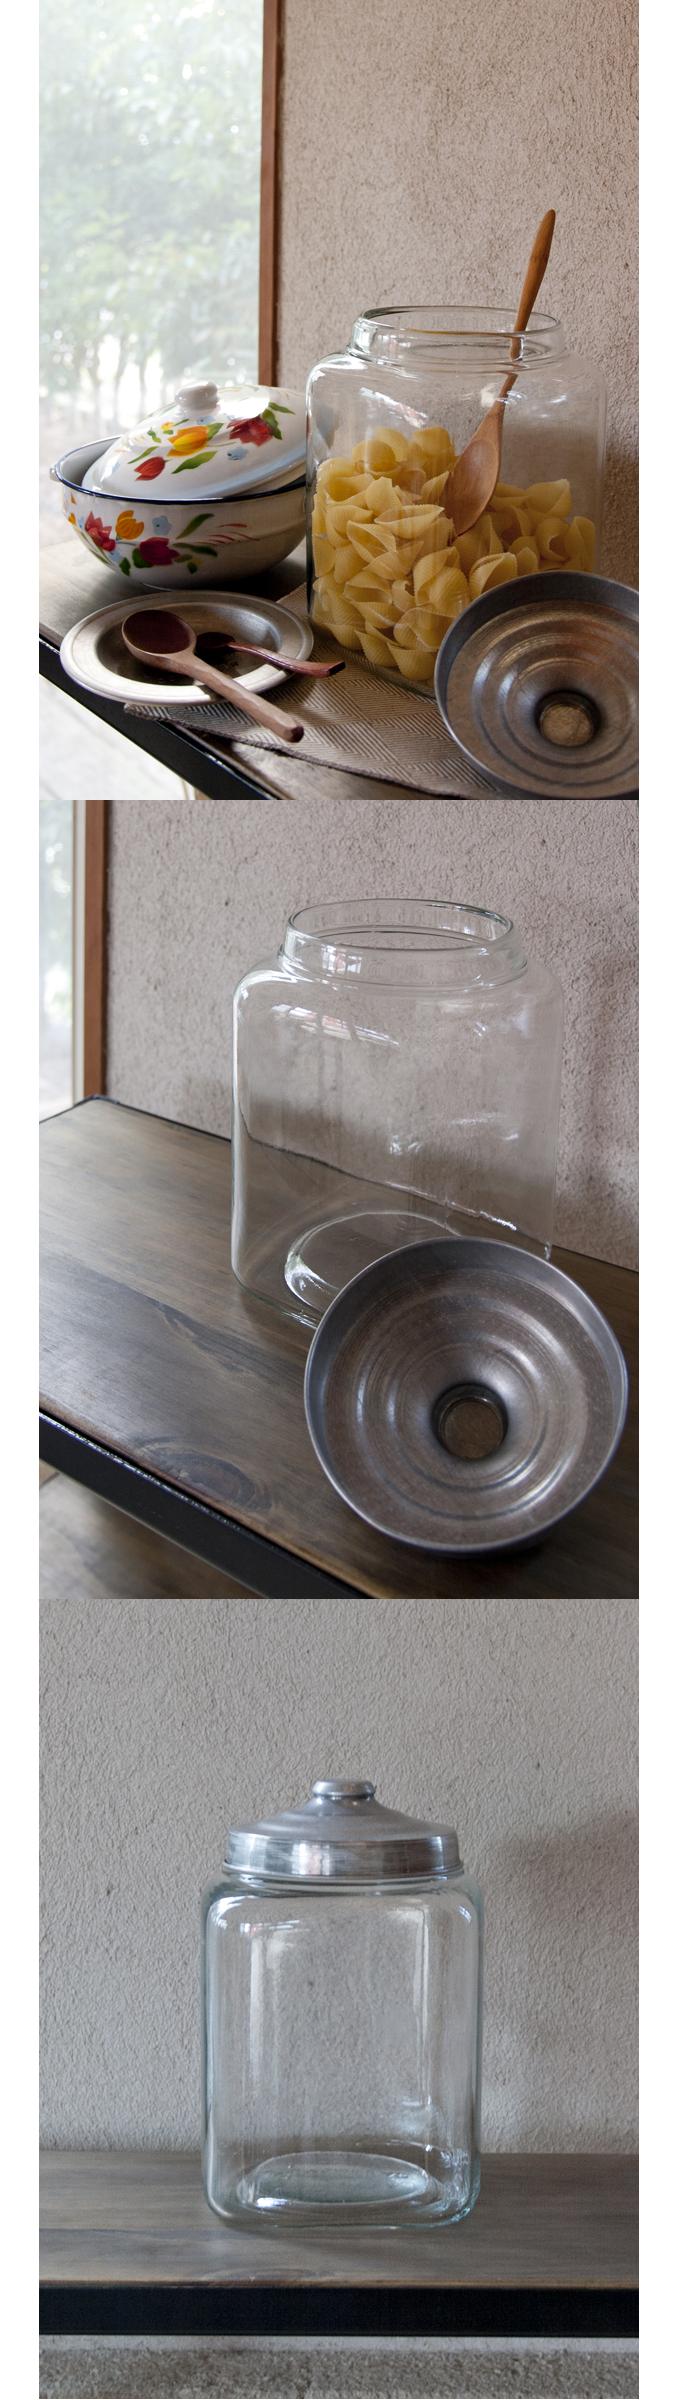 ガラス瓶 アンティーク調 食品保存容器 ガラス 瓶 おしゃれ キッチン用品 ポット ジャー